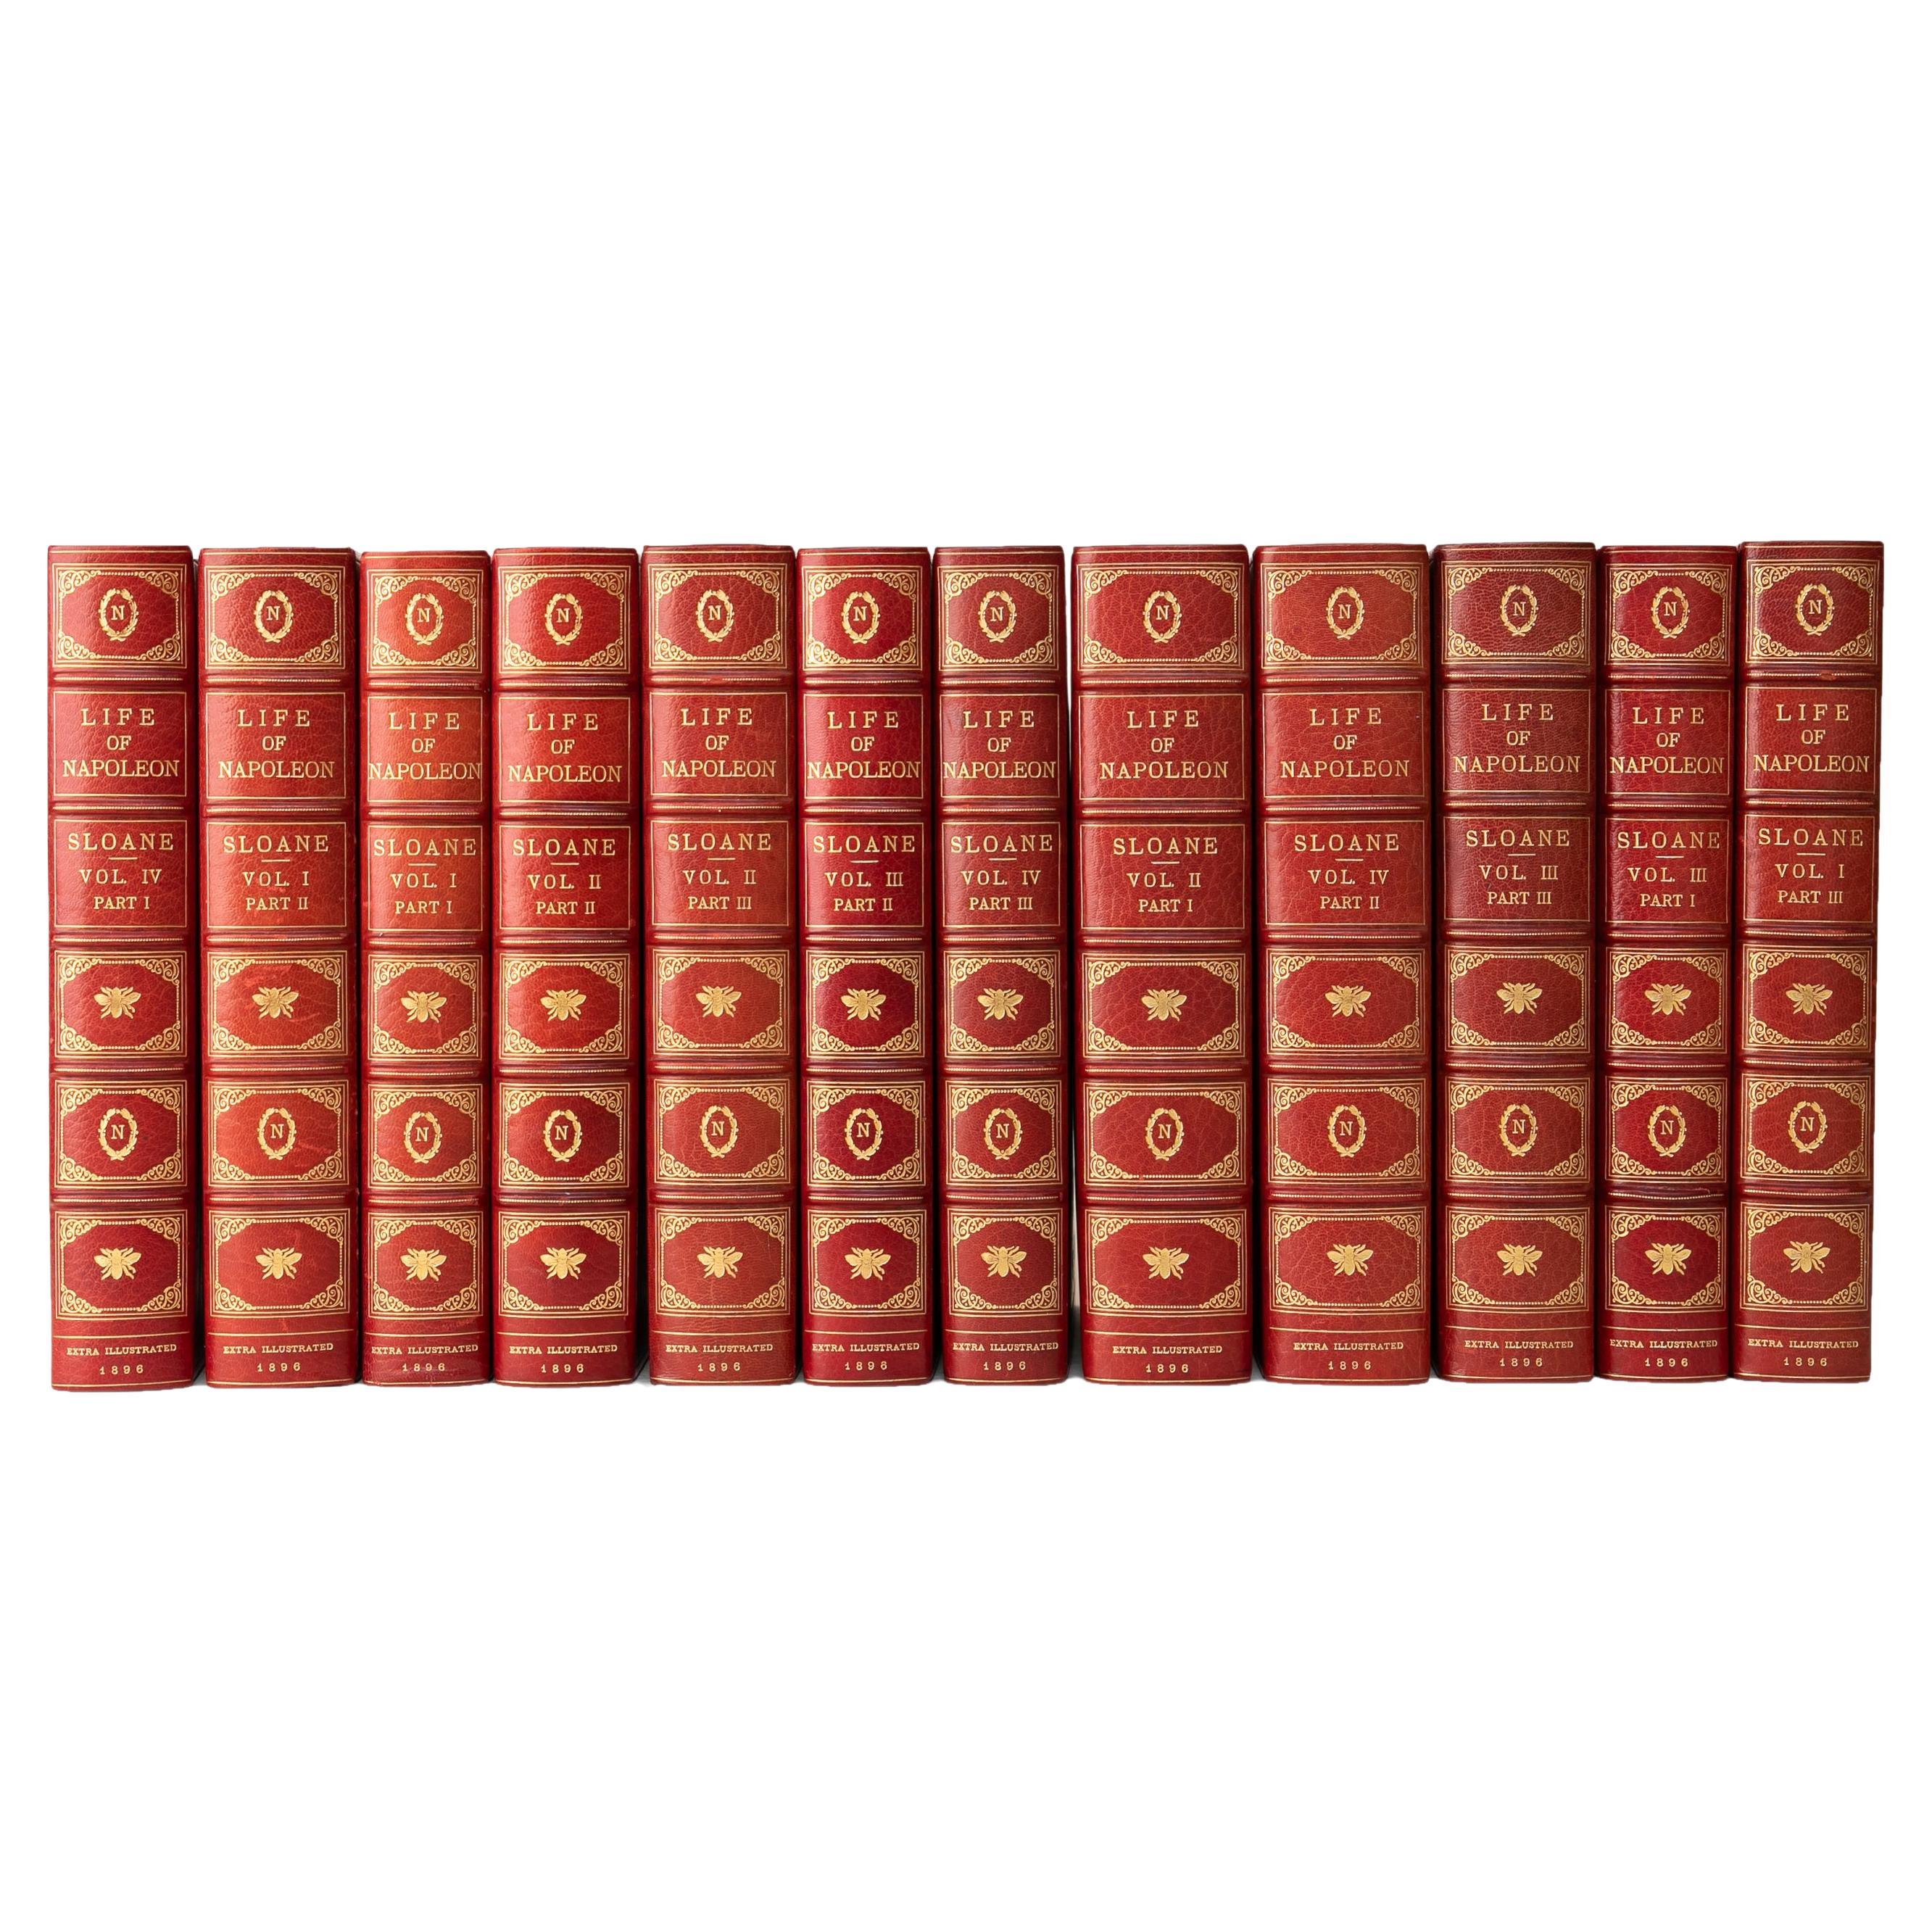 12 Volumes. William M. Sloan. Life of Napoléon